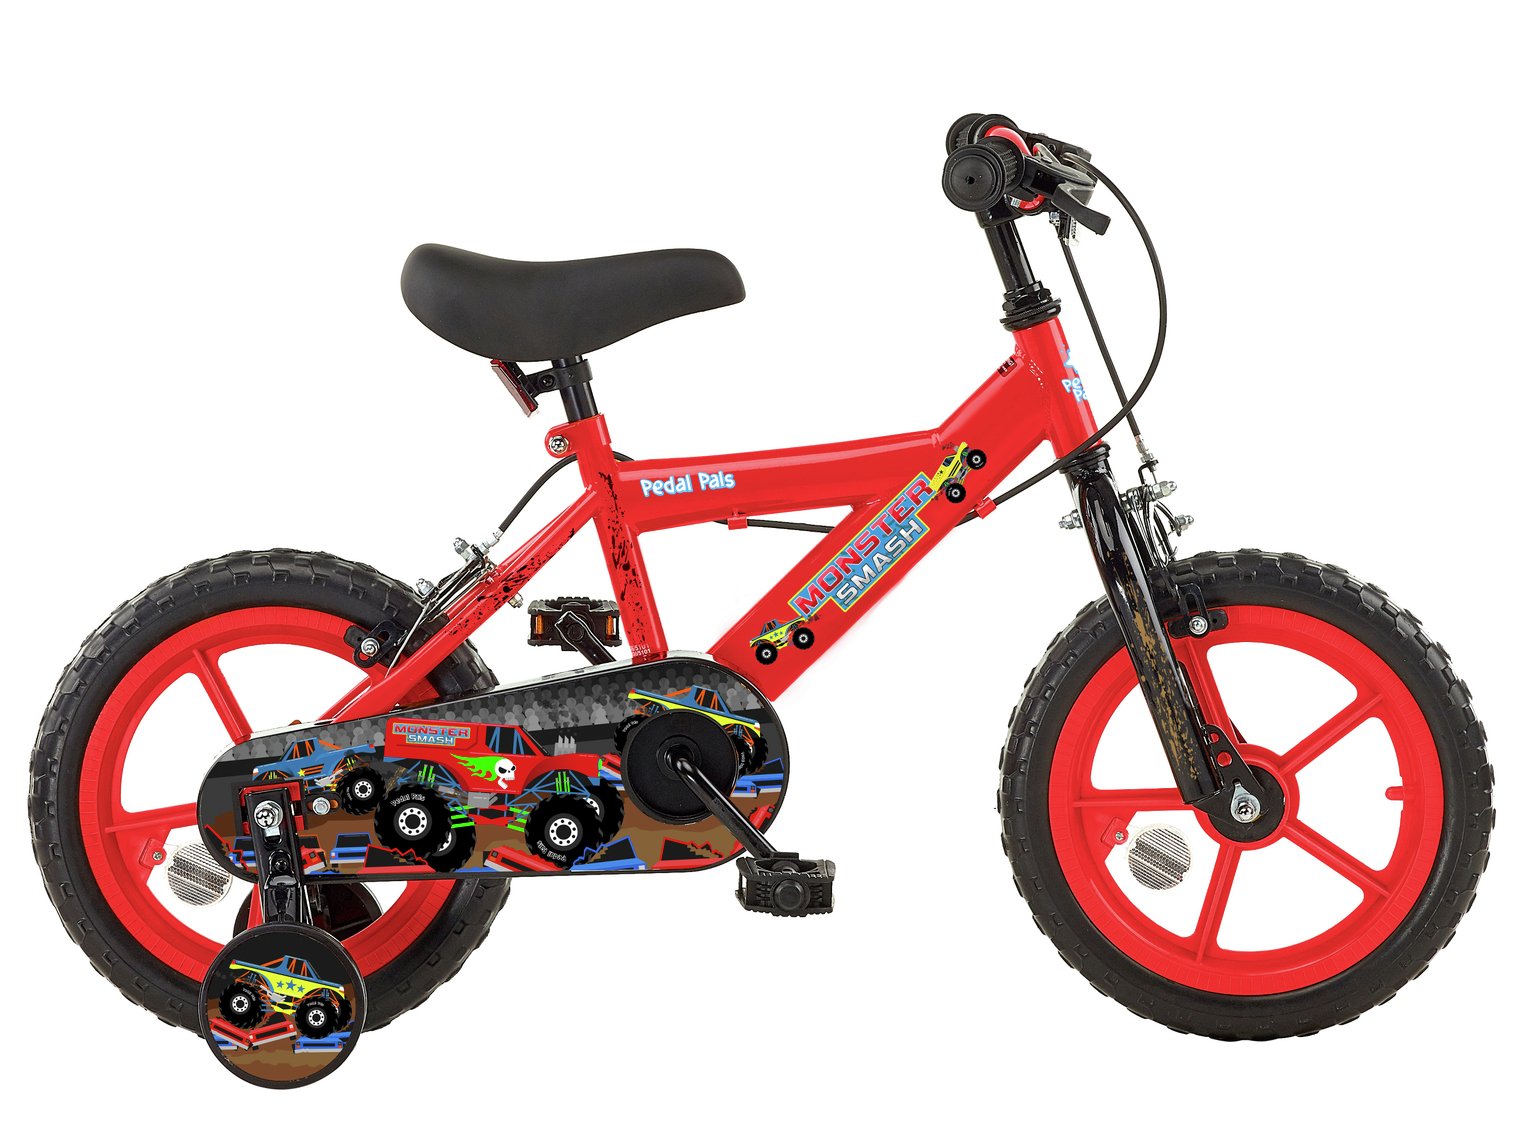 Pedal Pals 14 inch Wheel Size Kids Mountain Bike